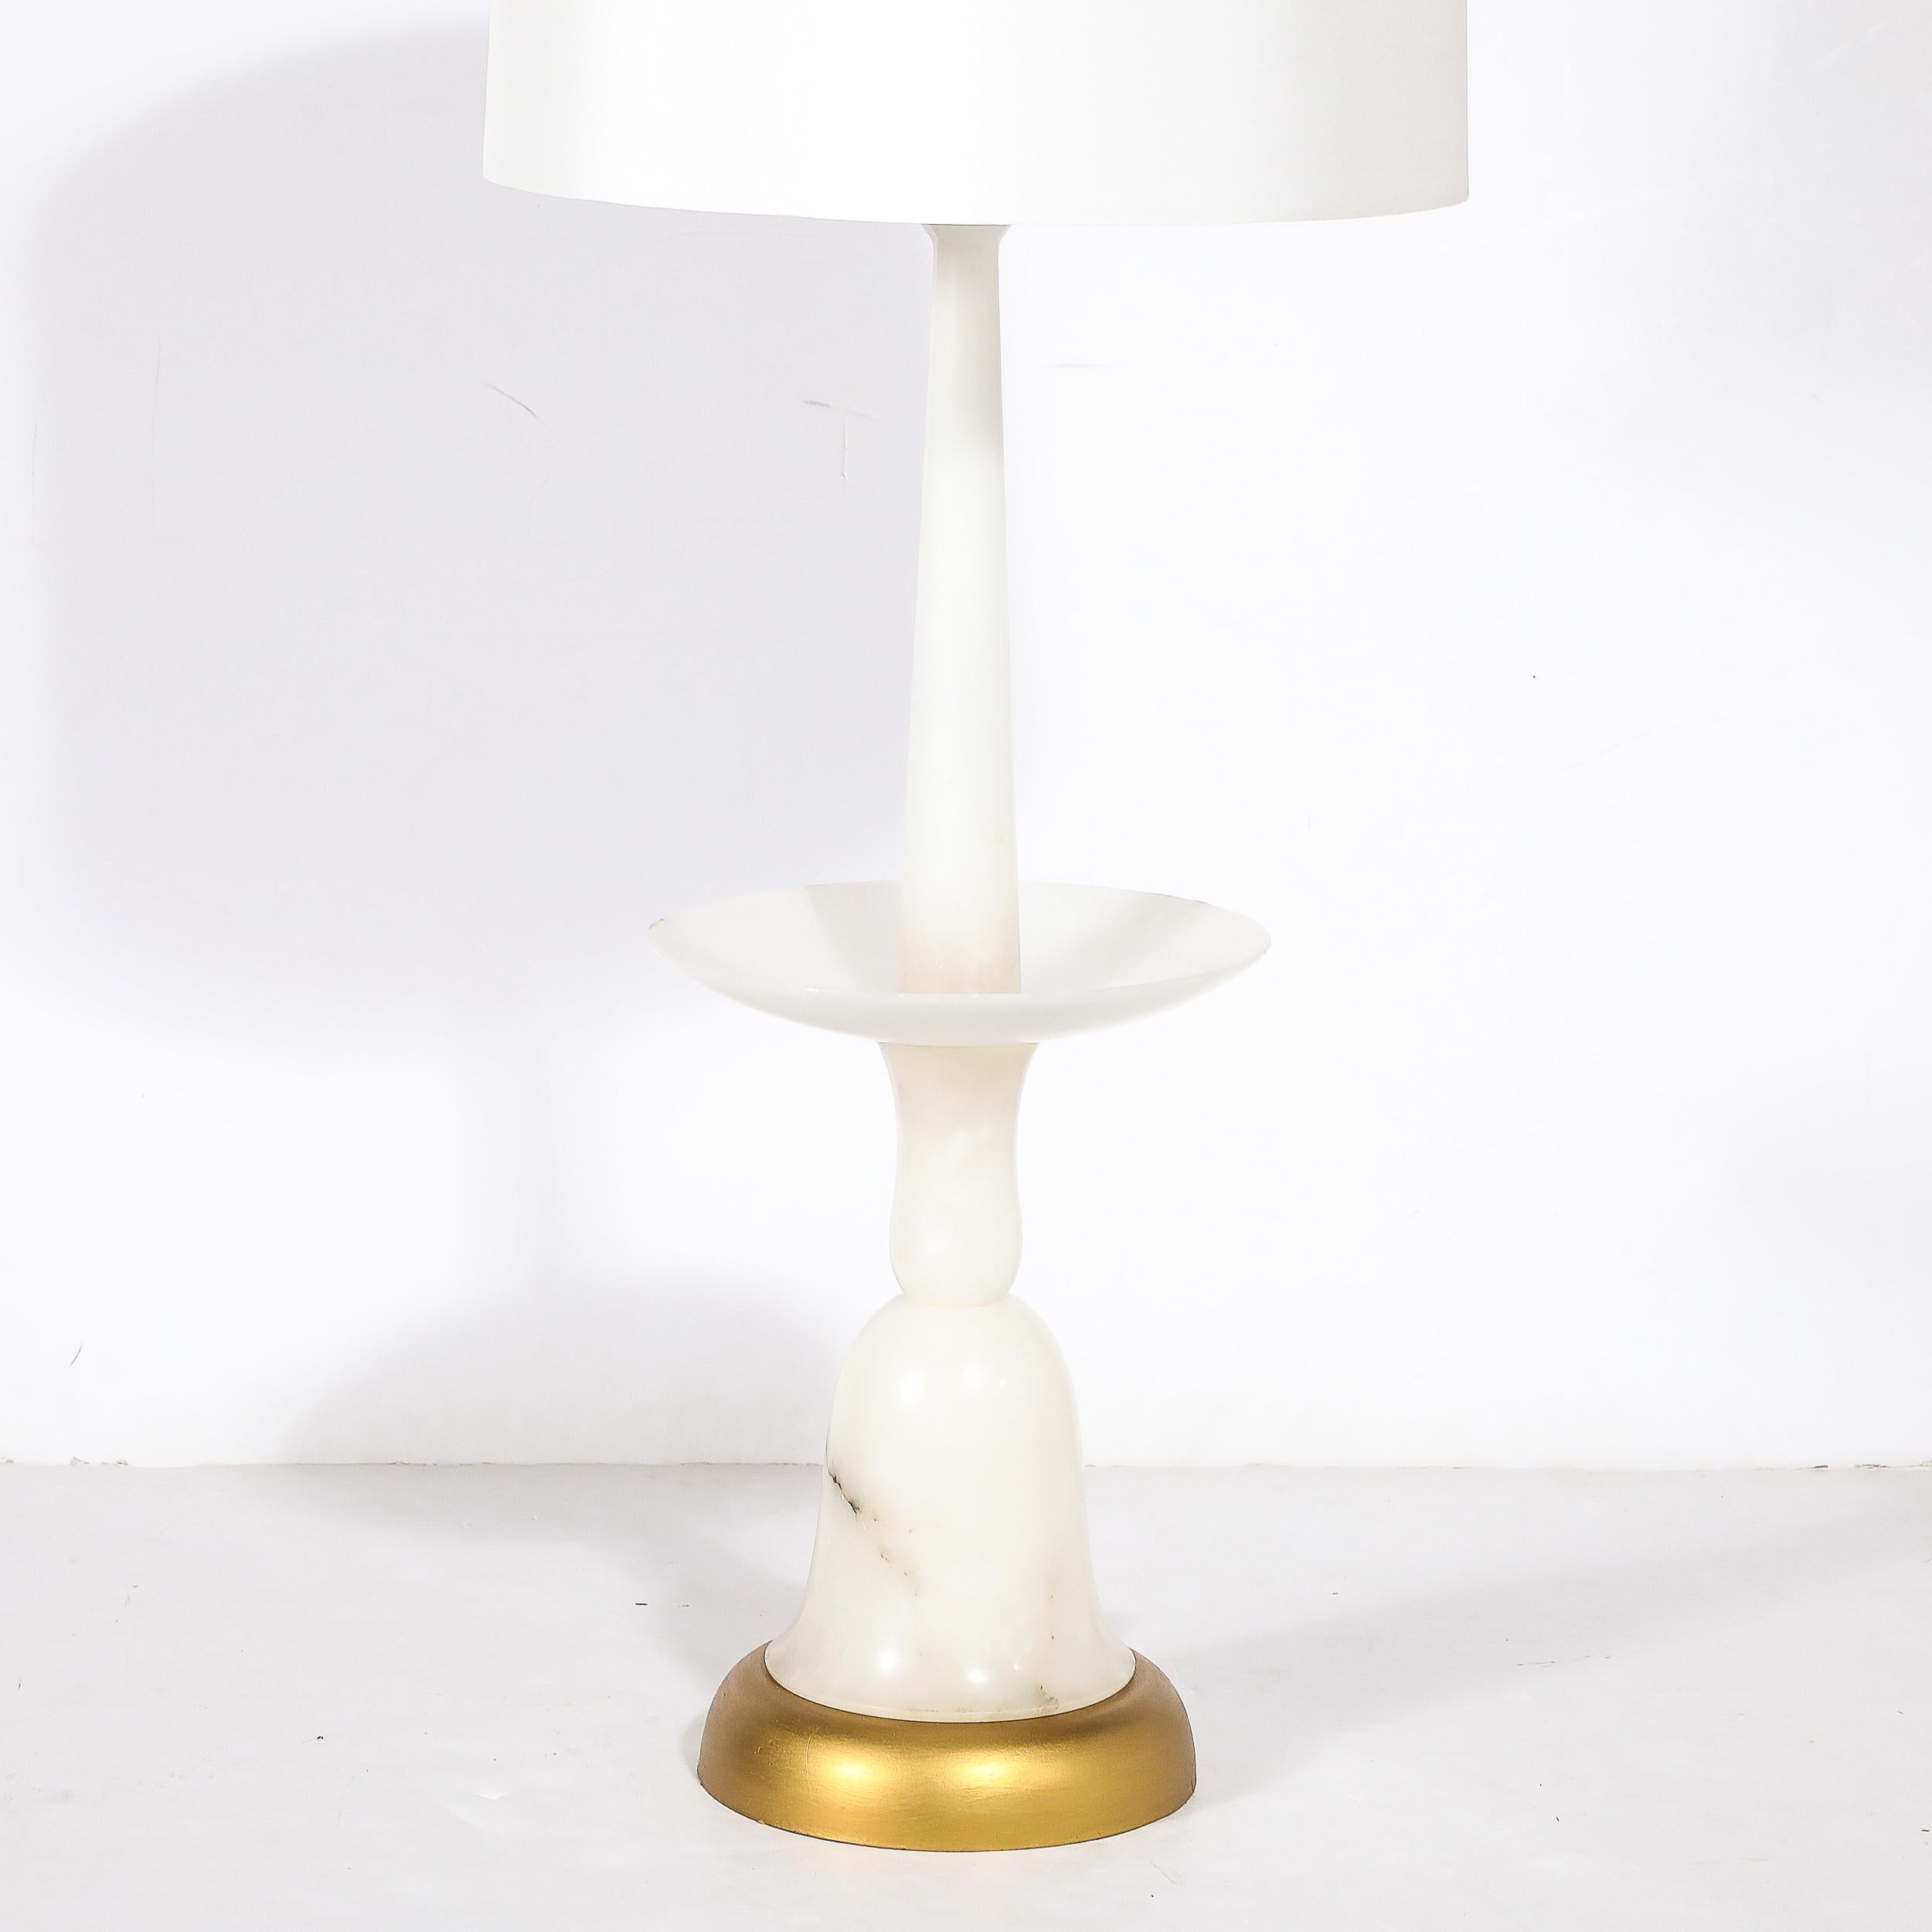 Cette lampe de table sculpturale de forme balustrade en marbre Carrera avec base dorée, unique et bien proportionnée, est originaire d'Italie, vers 1960. Cette lampe présente une belle silhouette aux lignes élégamment incurvées et aux détails